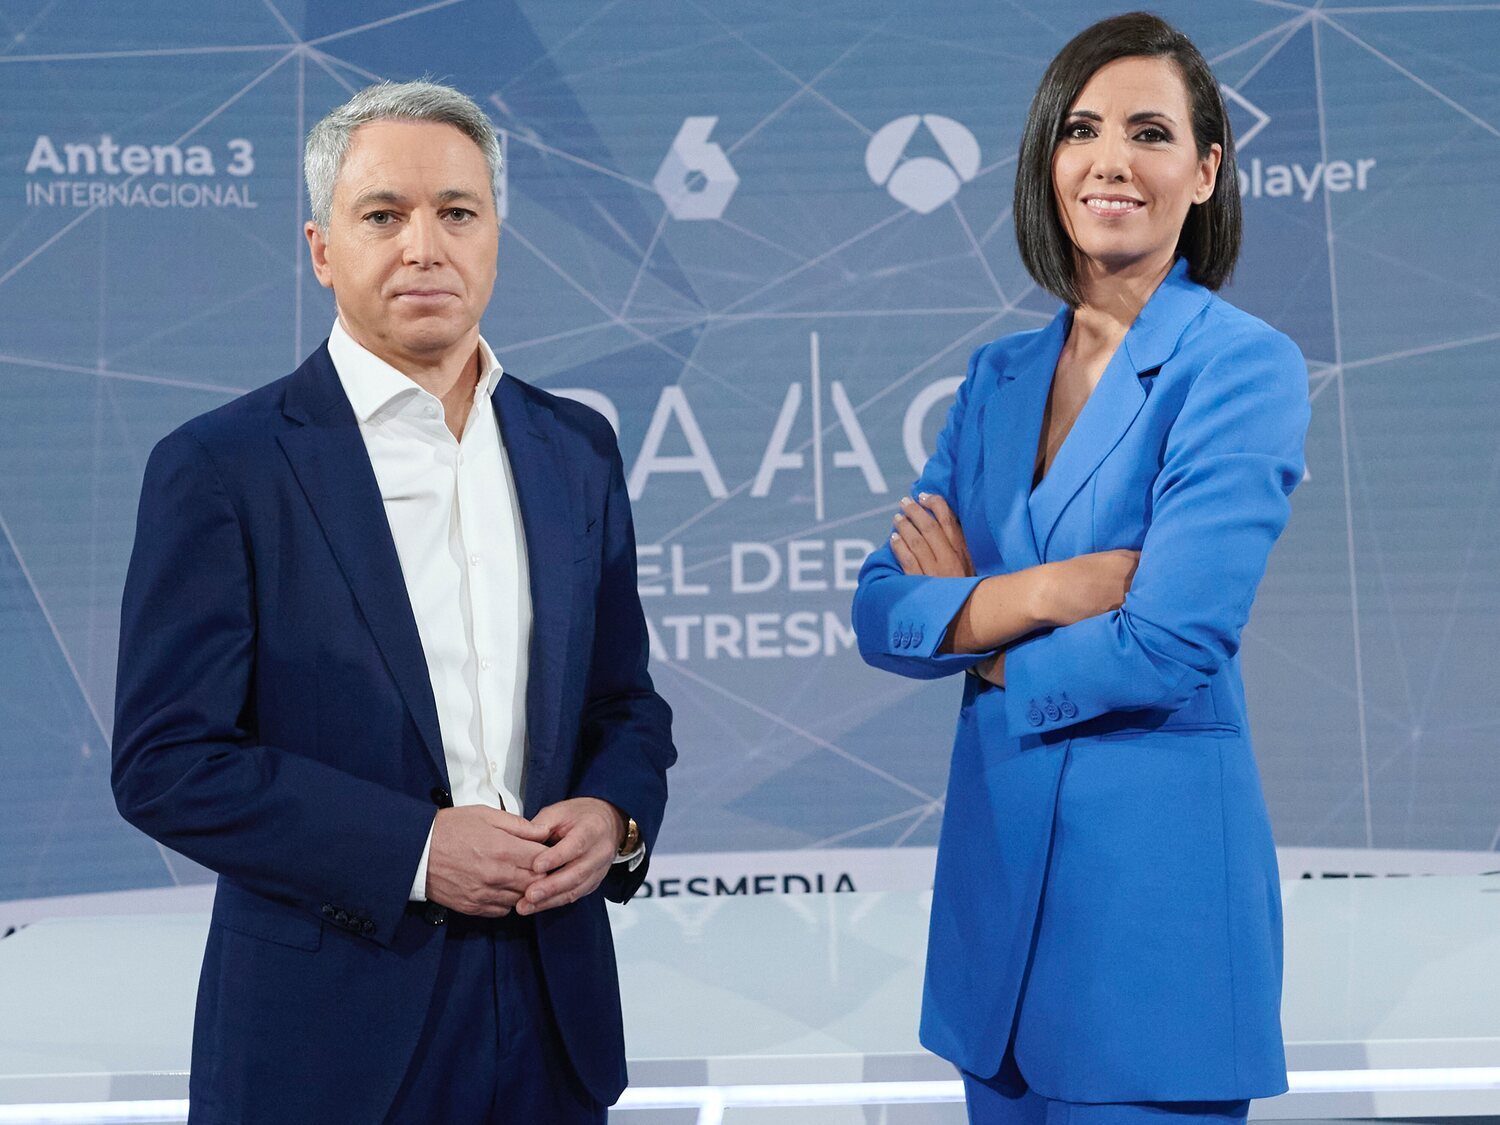 Ana Pastor y Vicente Vallés: "Va a ser una sorpresa ver las debilidades y fortalezas de los candidatos en un cara a cara"